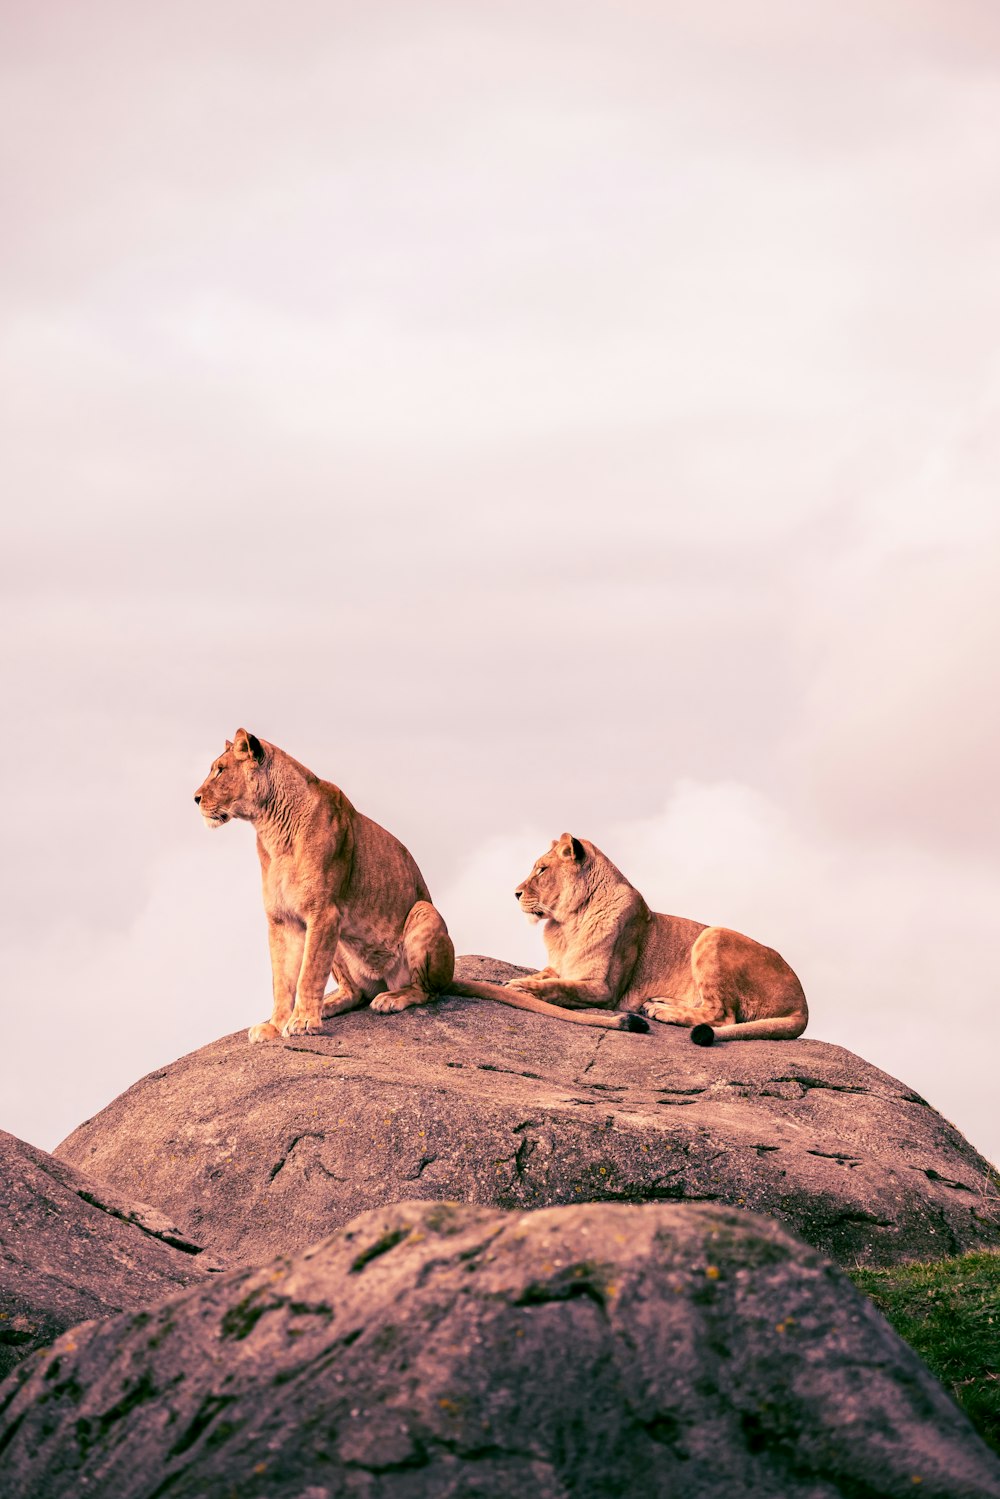 큰 바위 위에 앉아 있는 사자 두 마리